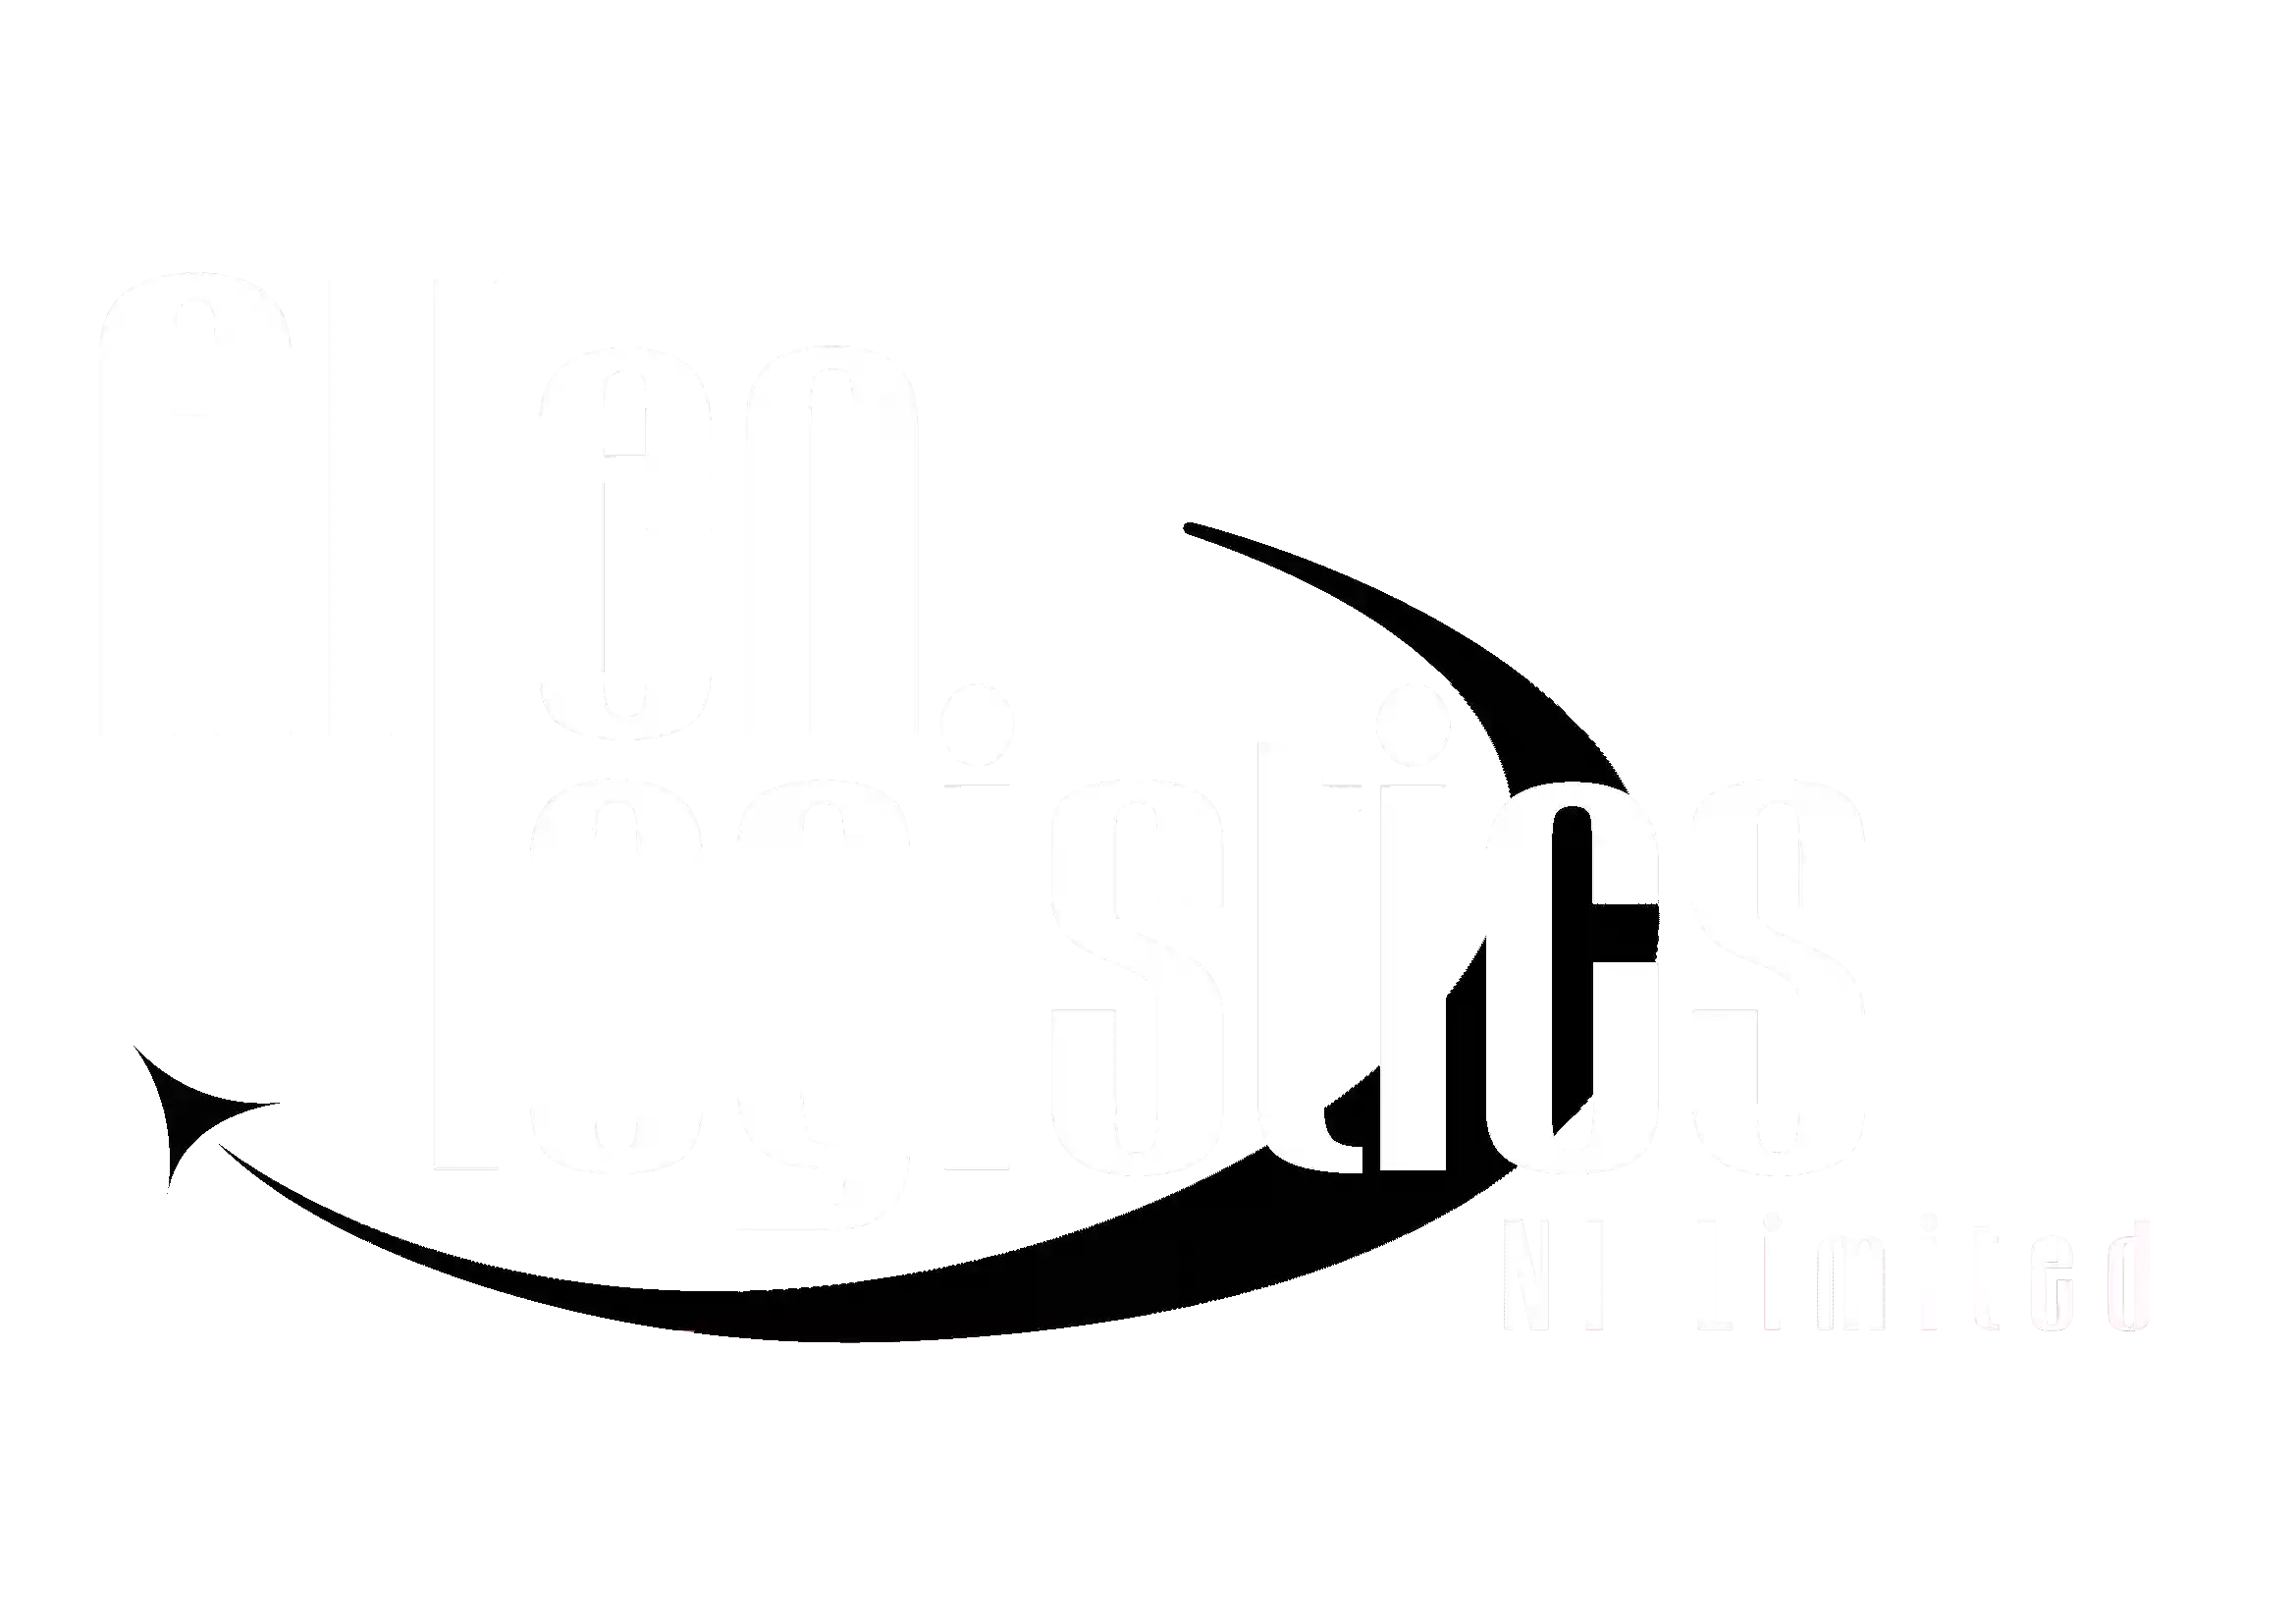 Allen Logistics NI Ltd